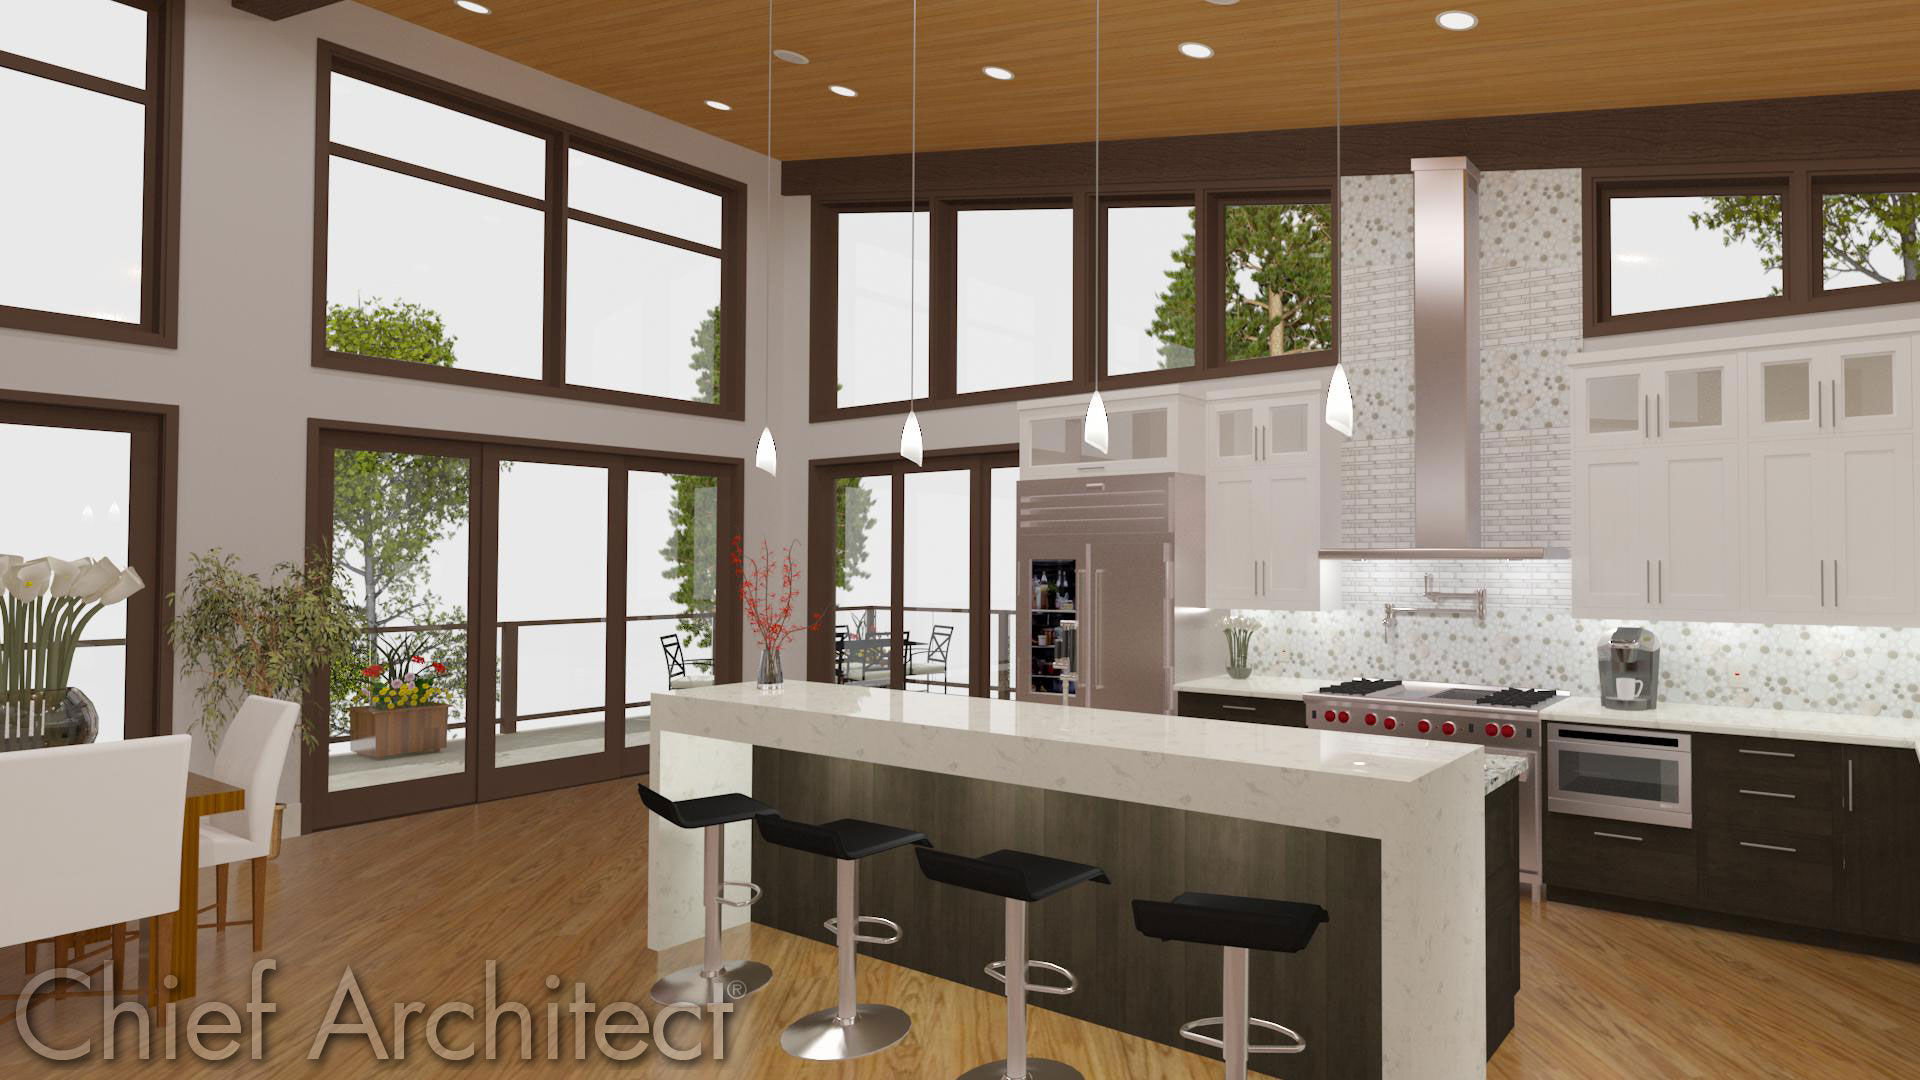 download chief architect kitchen